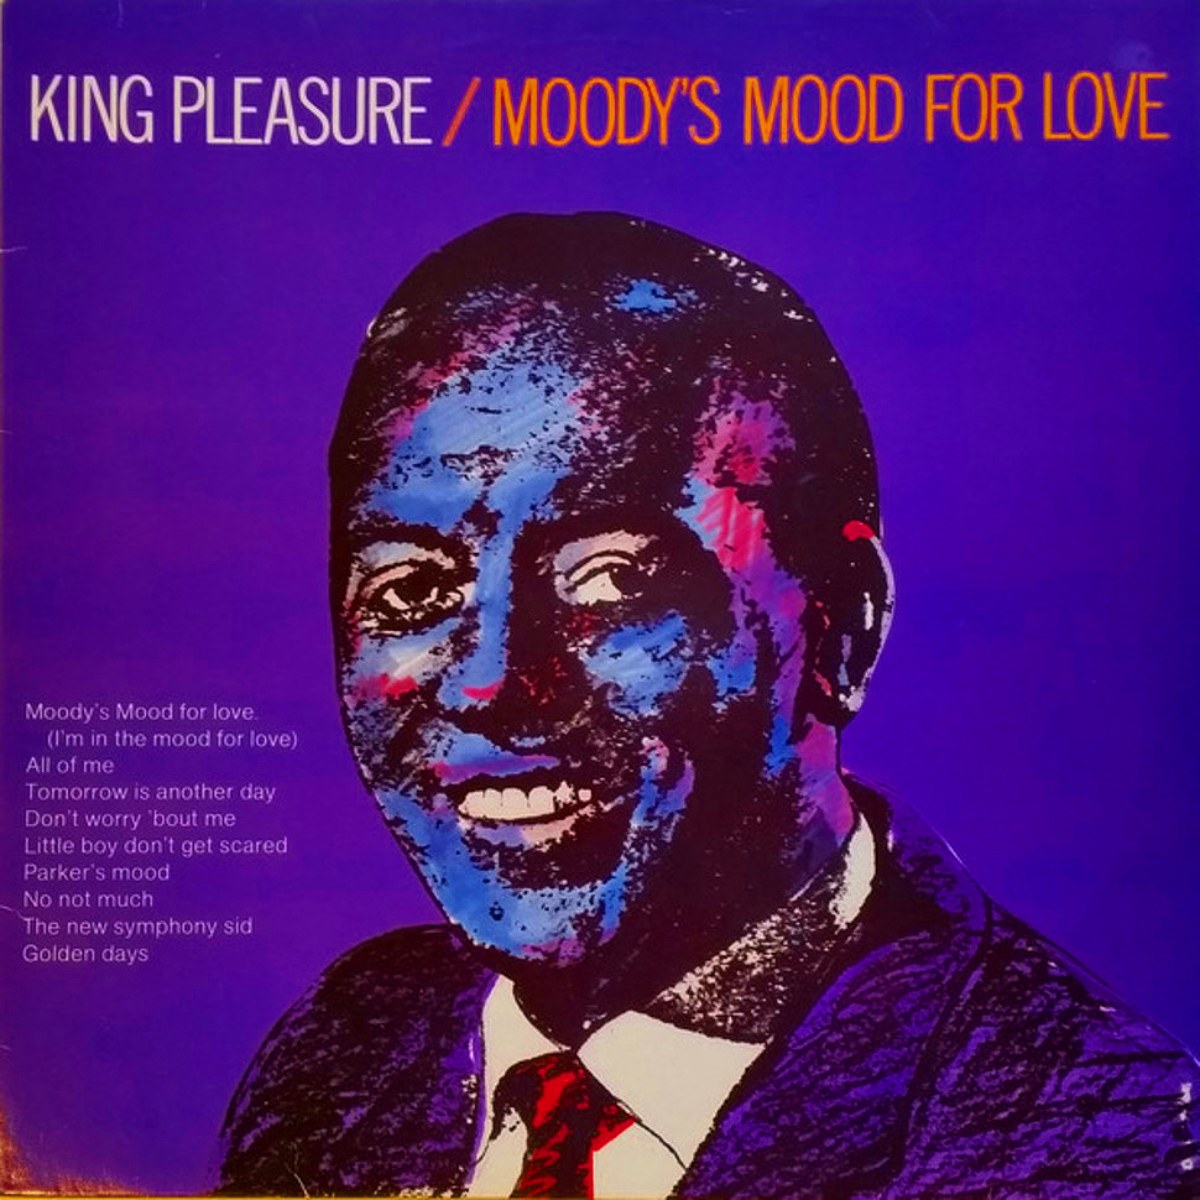 King Pleasure, versión del single Moody's Mood for Love